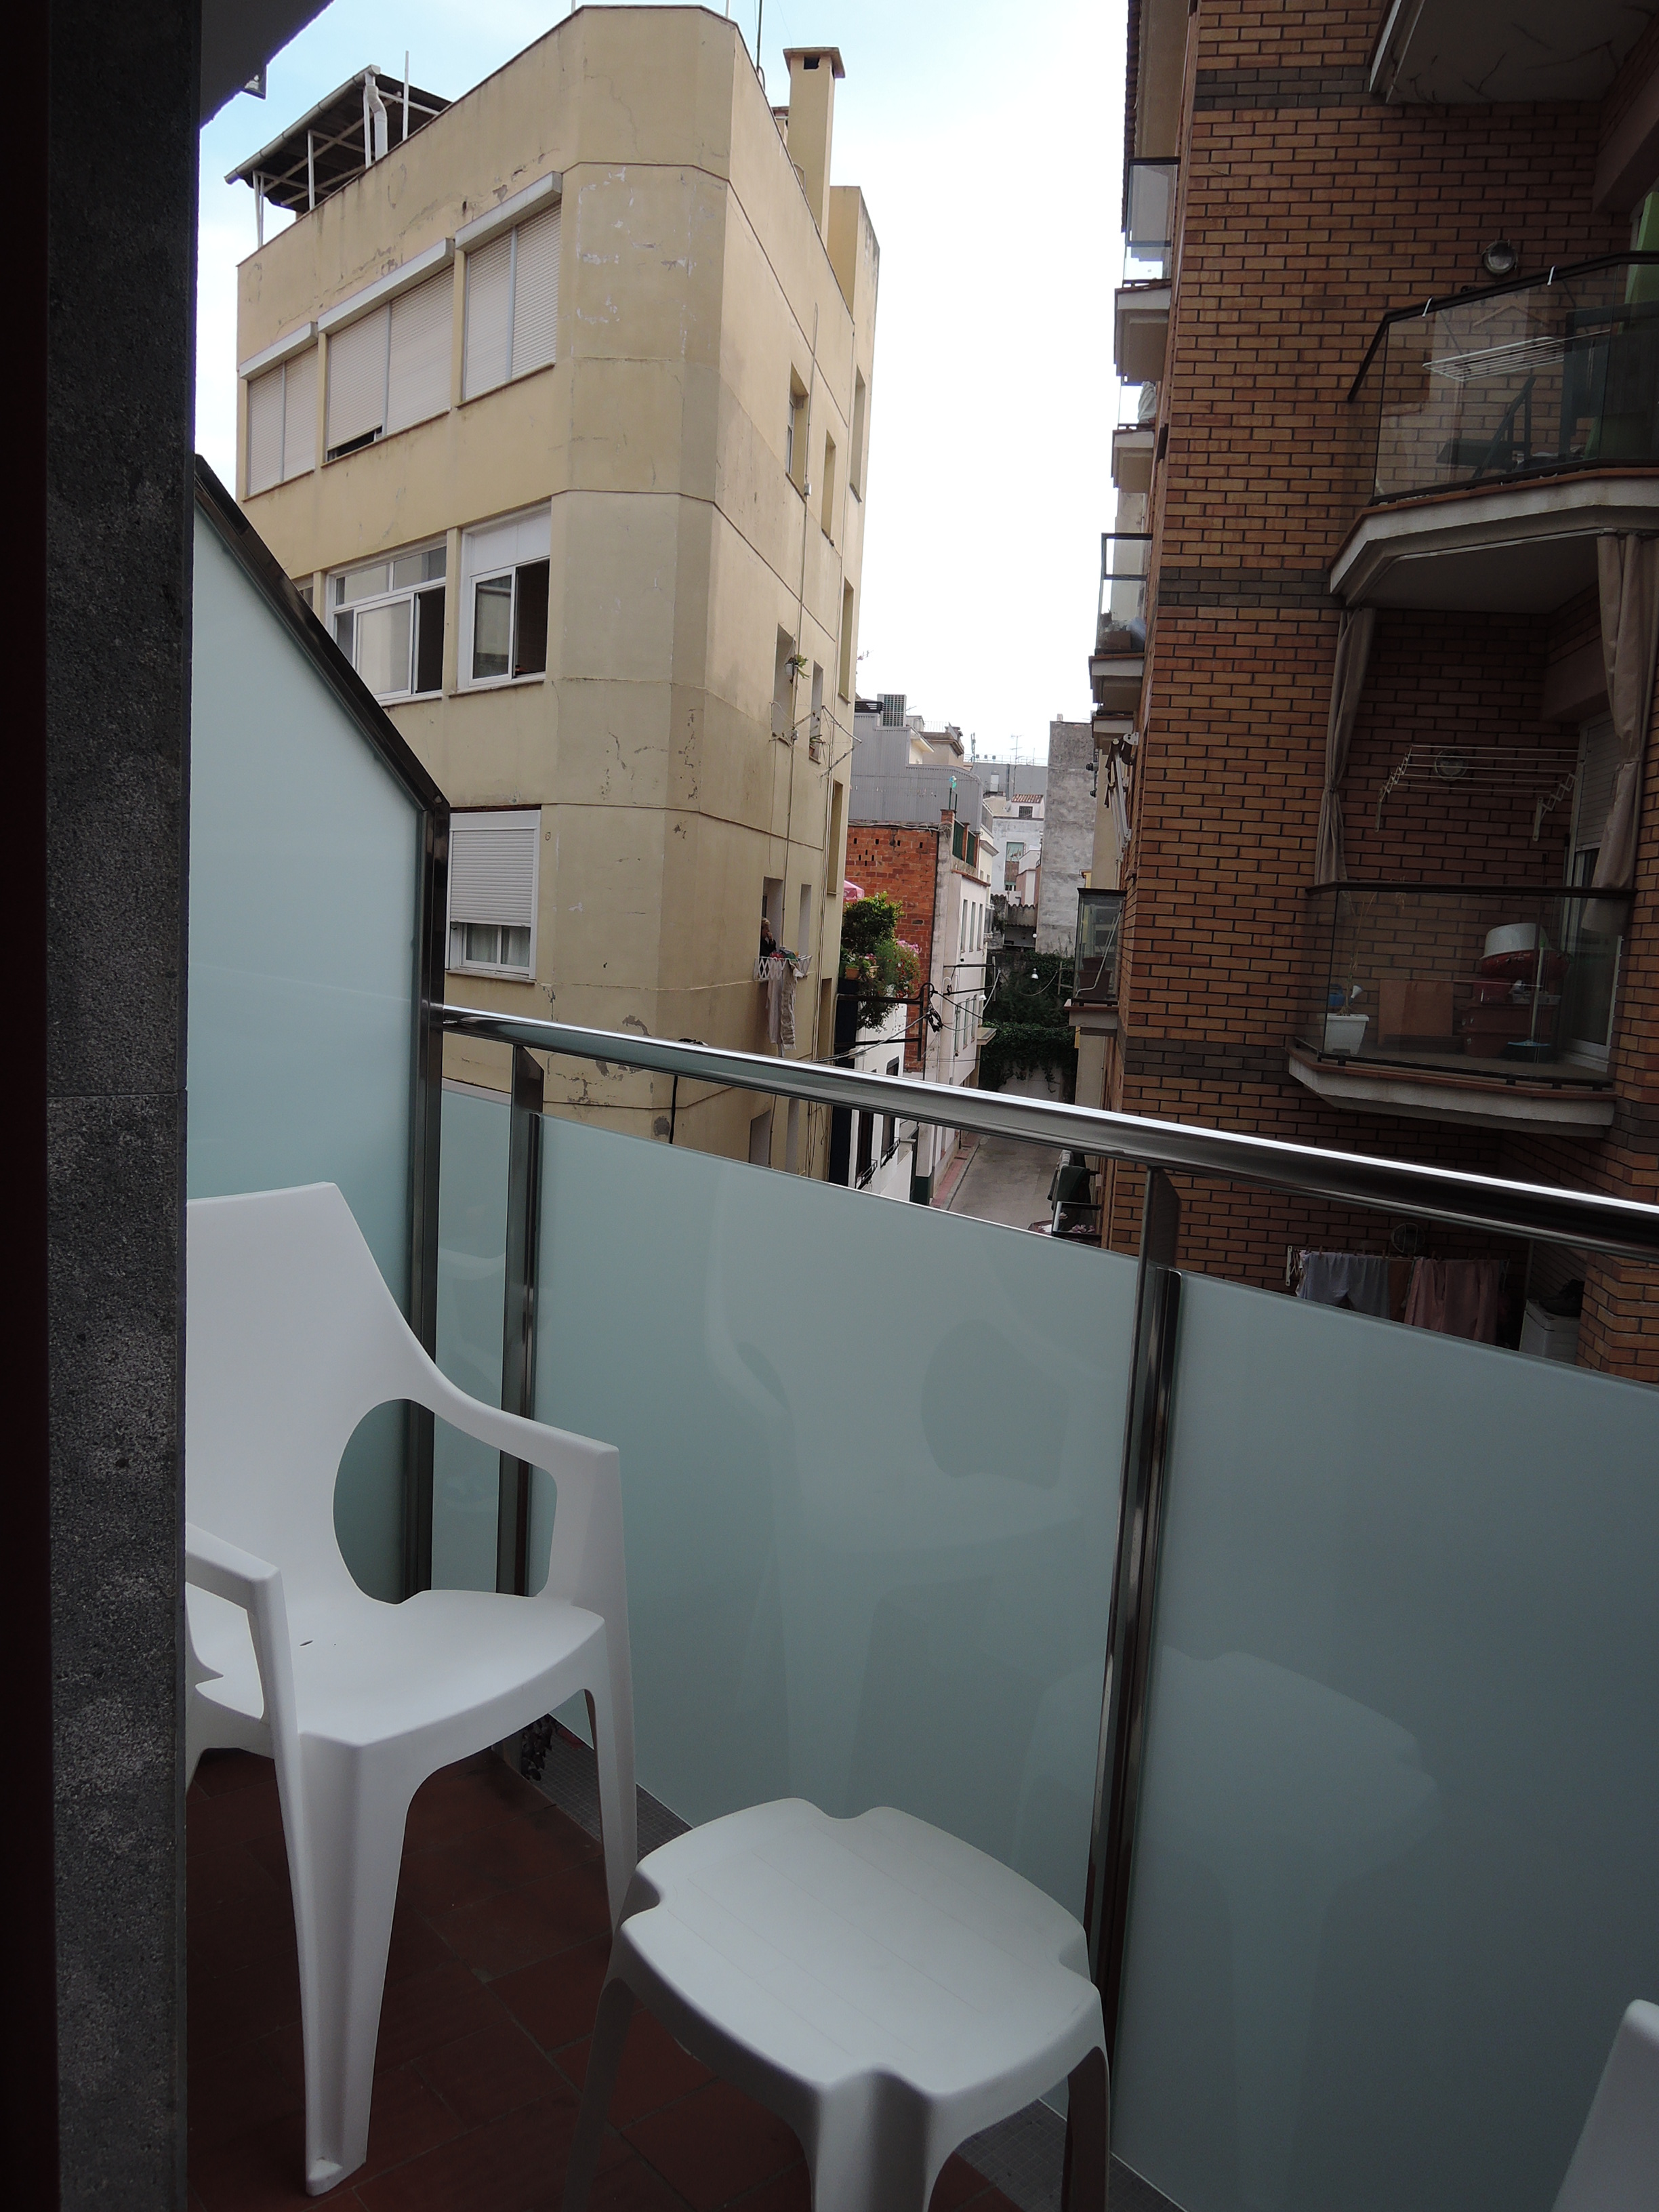 Dreibetzimmer mit Balkon und eigenem Bad 1